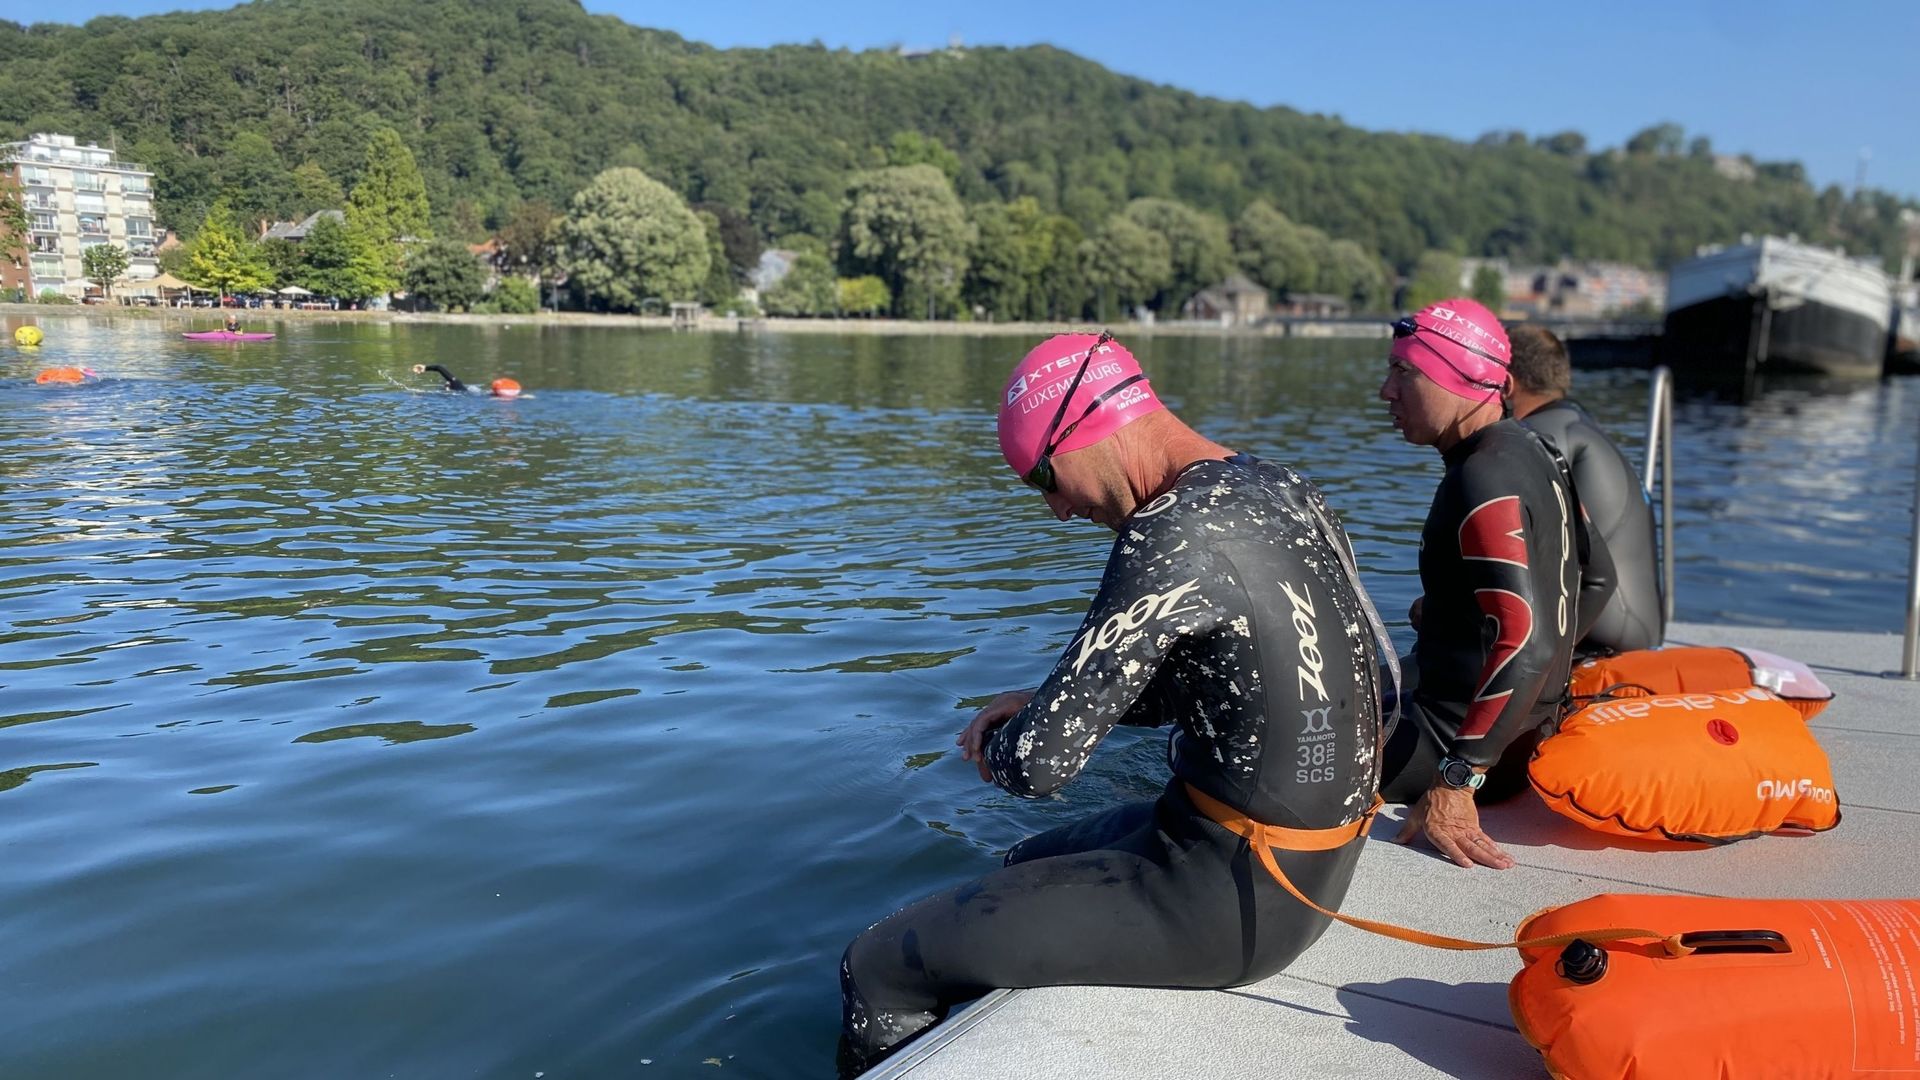 Nager dans la Meuse est interdit, sauf pour les membres du Club Namur Nage en Meuse, qui organise des séances d’entraînement le samedi matin à Jambes.